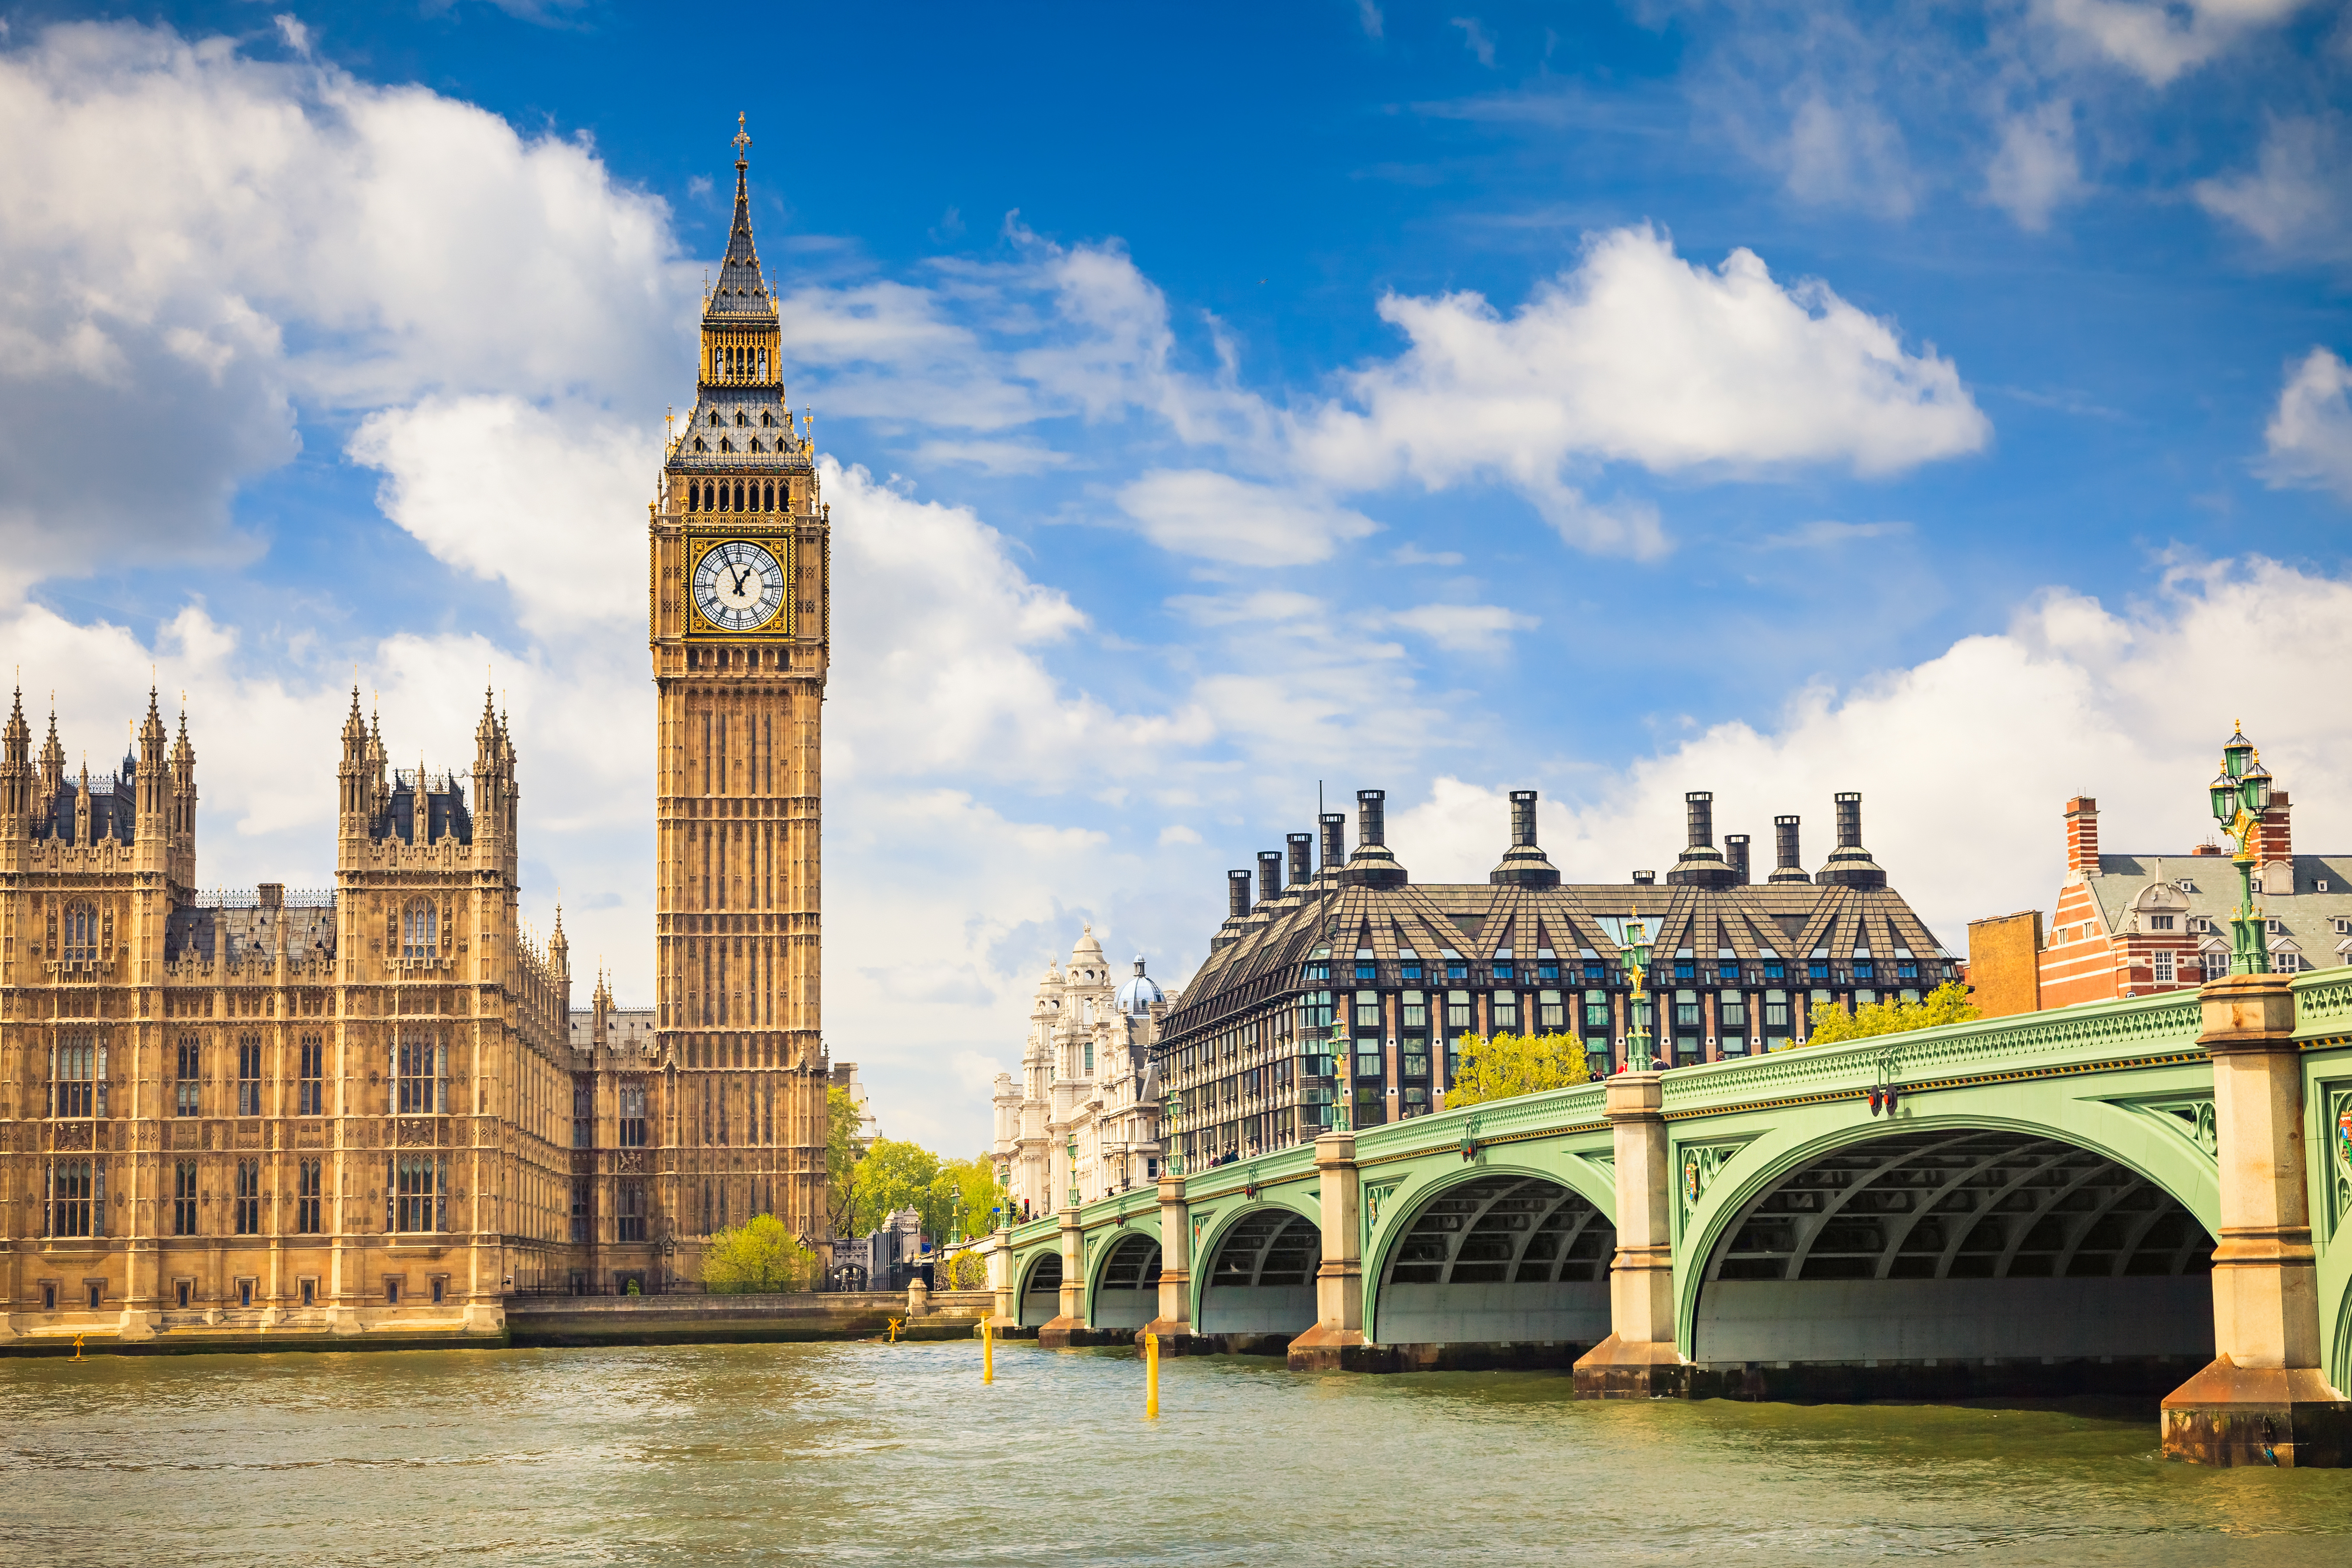 Städtereise nach London - Big Ben und House of Parliament